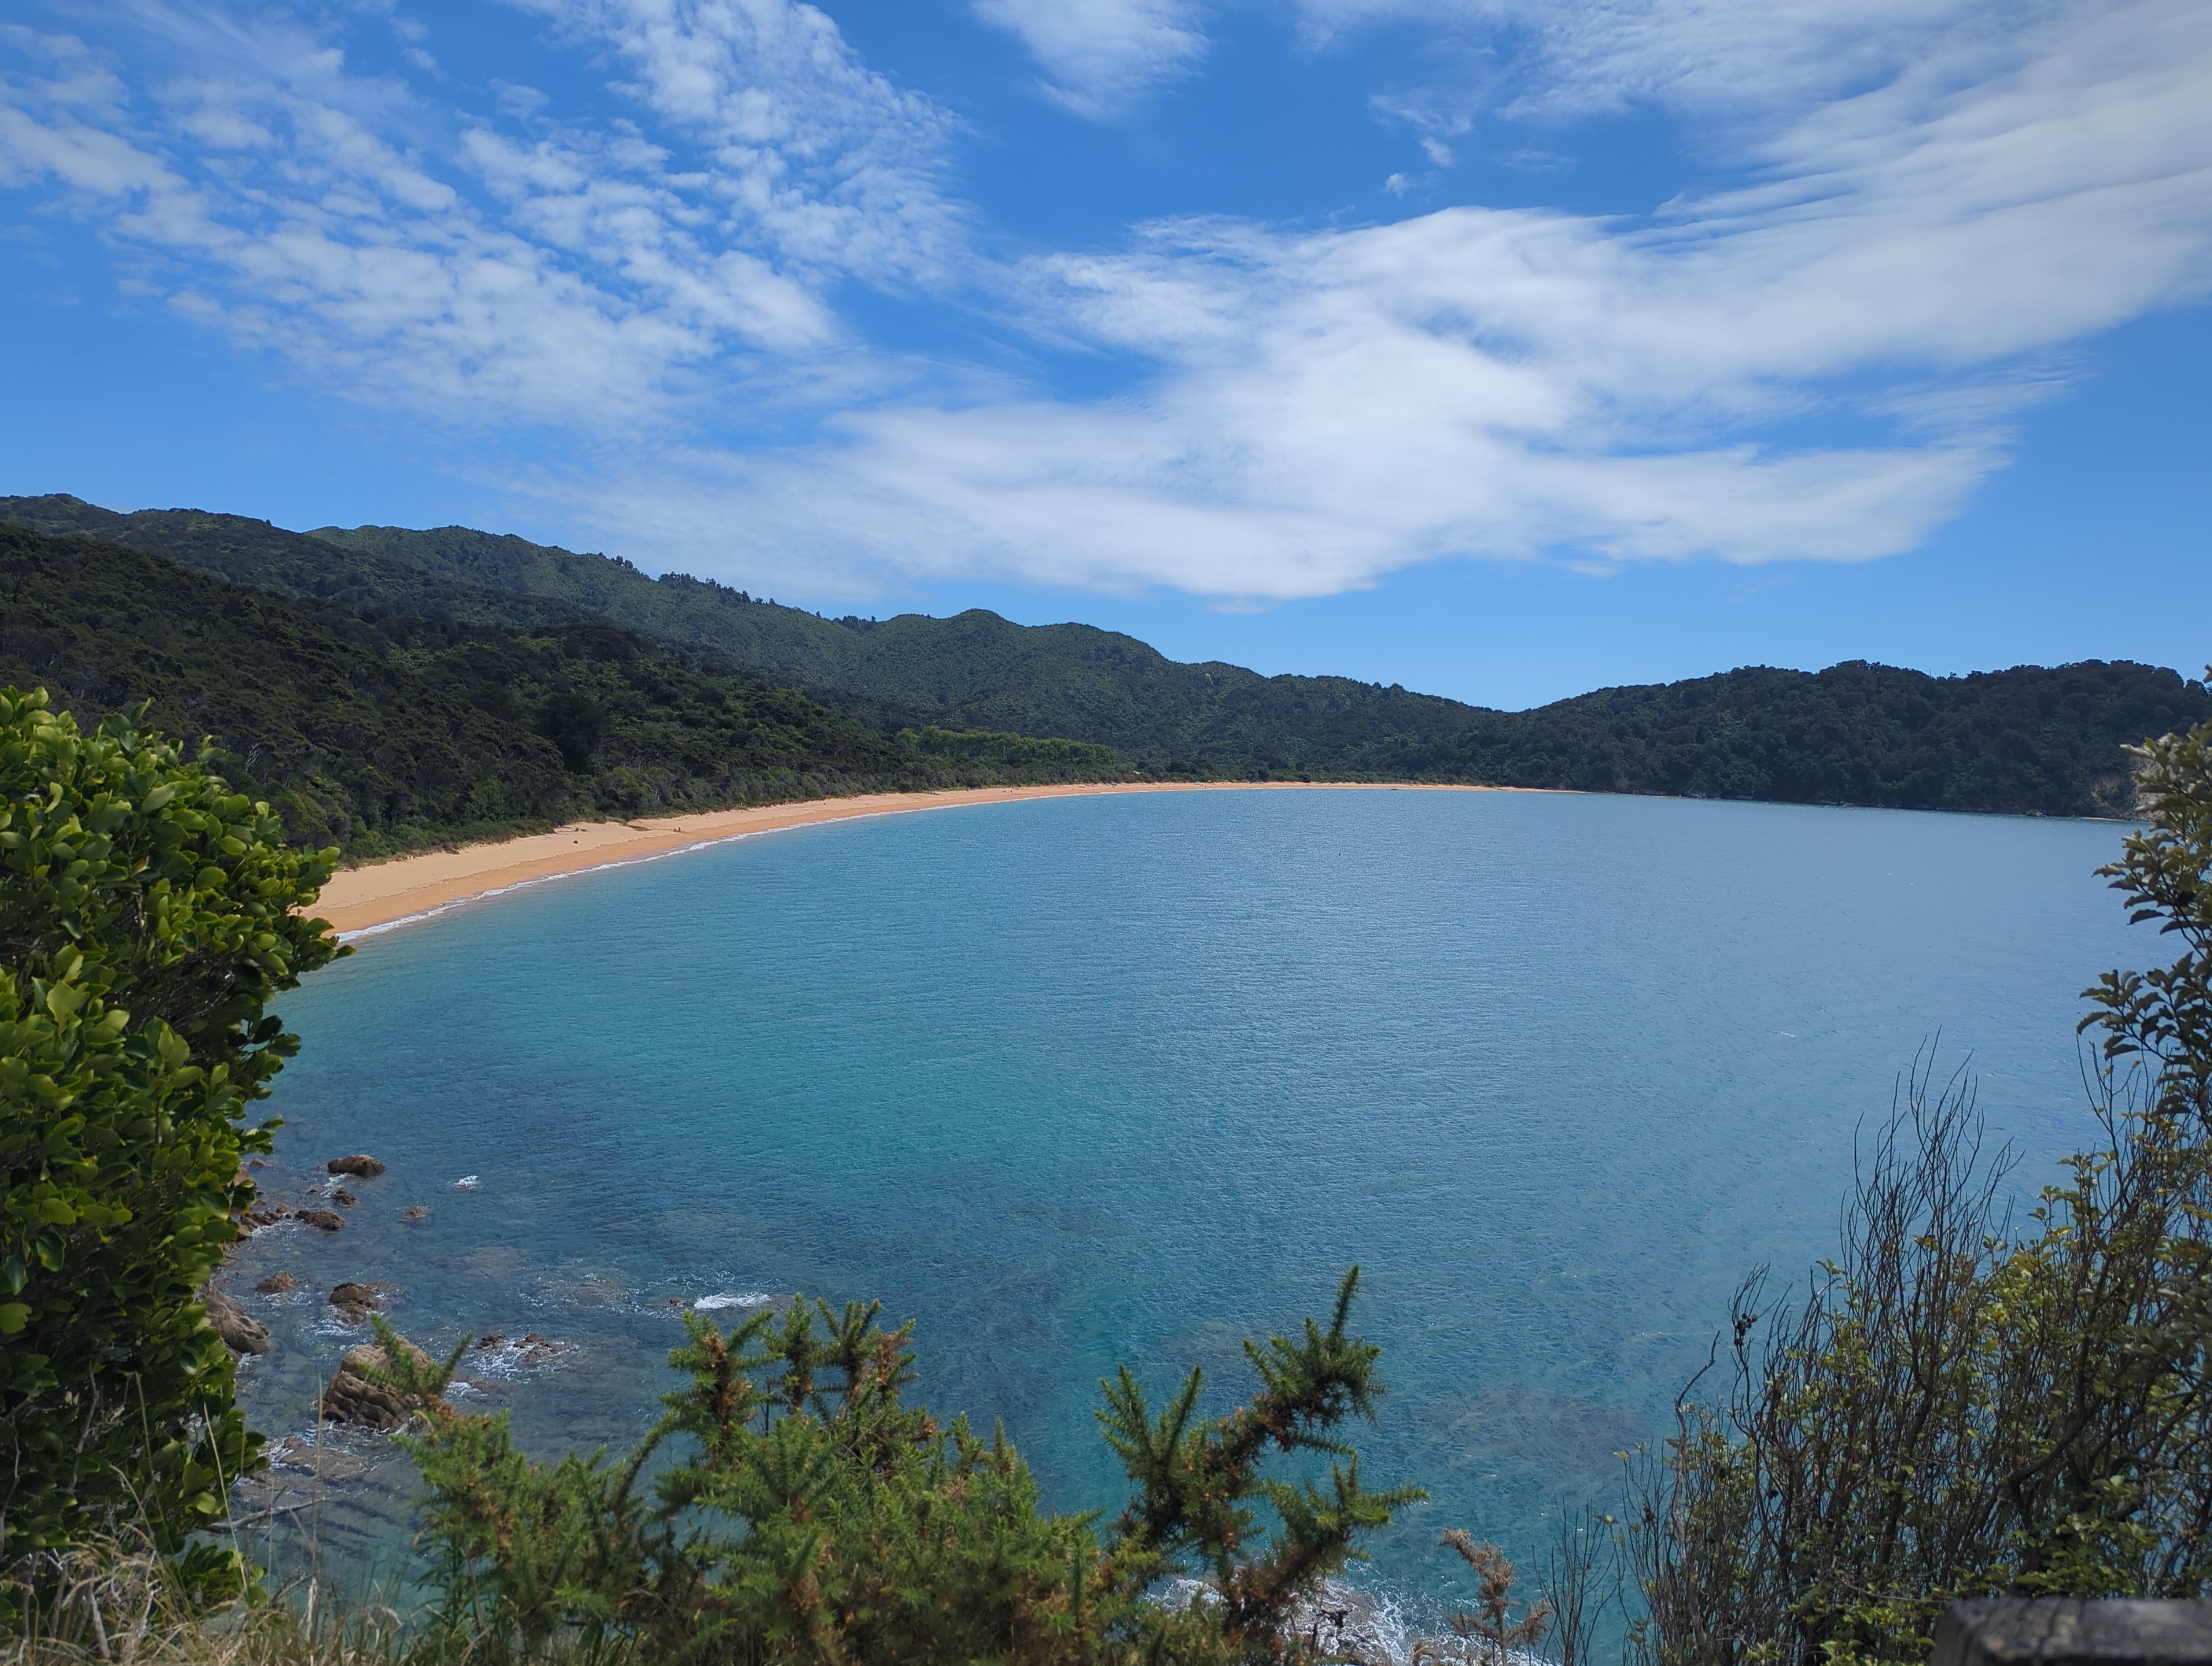 Photo of Tōtaranui beach from a nearby hill